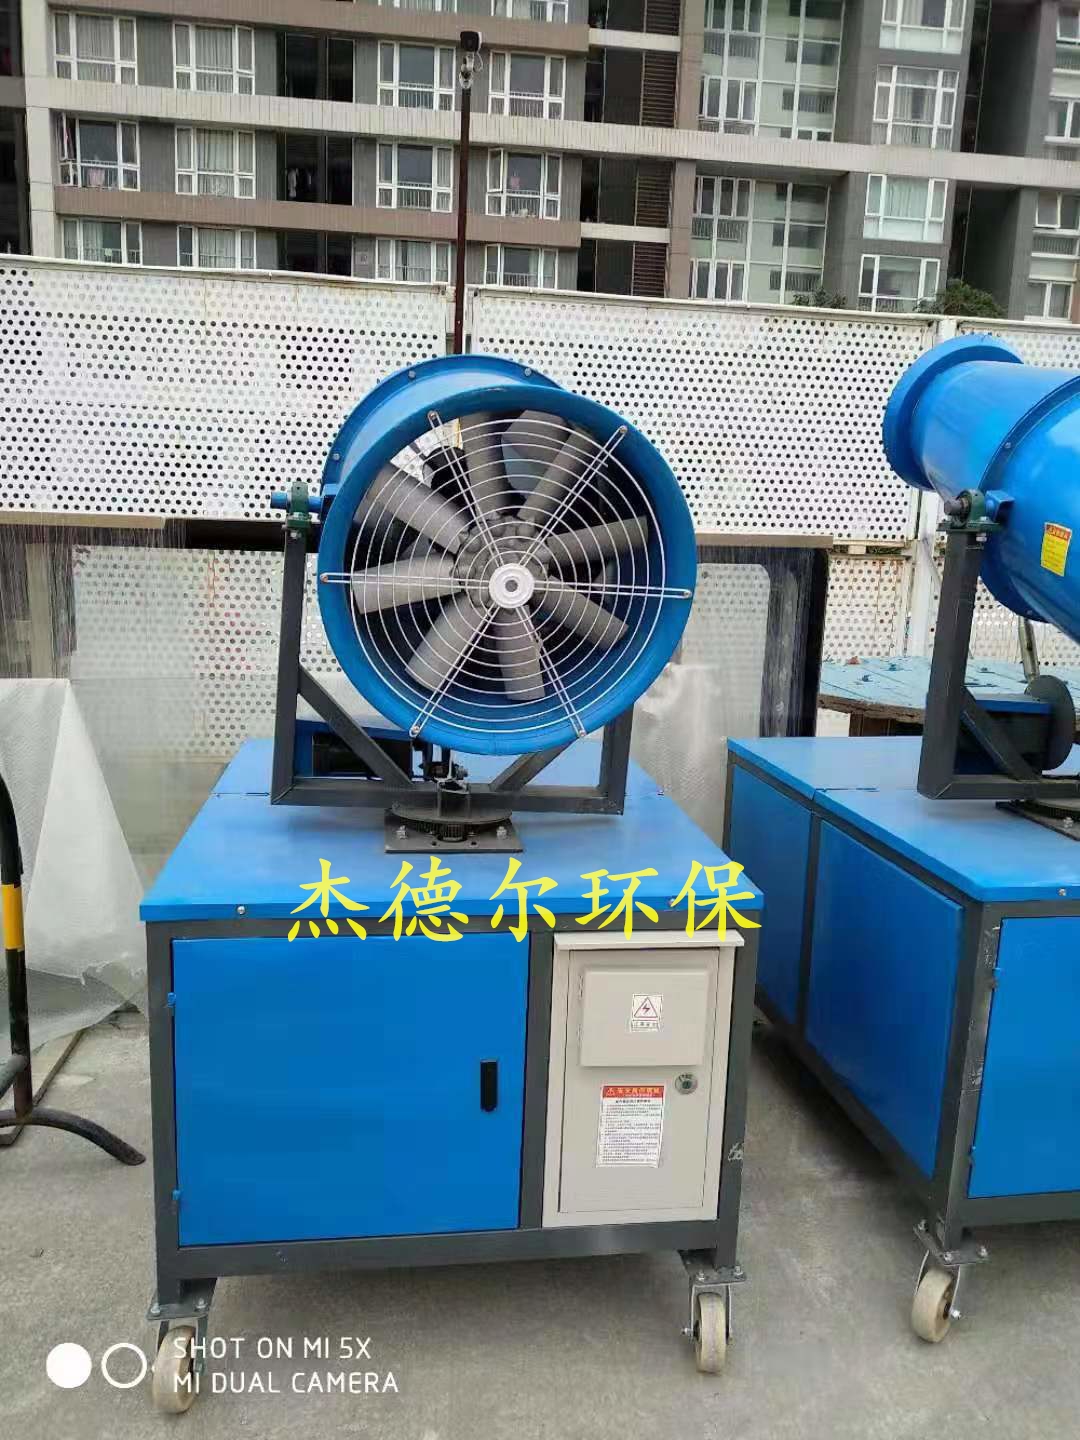 柳州市柳南工程洗轮机-新型无人值守高效环保设备